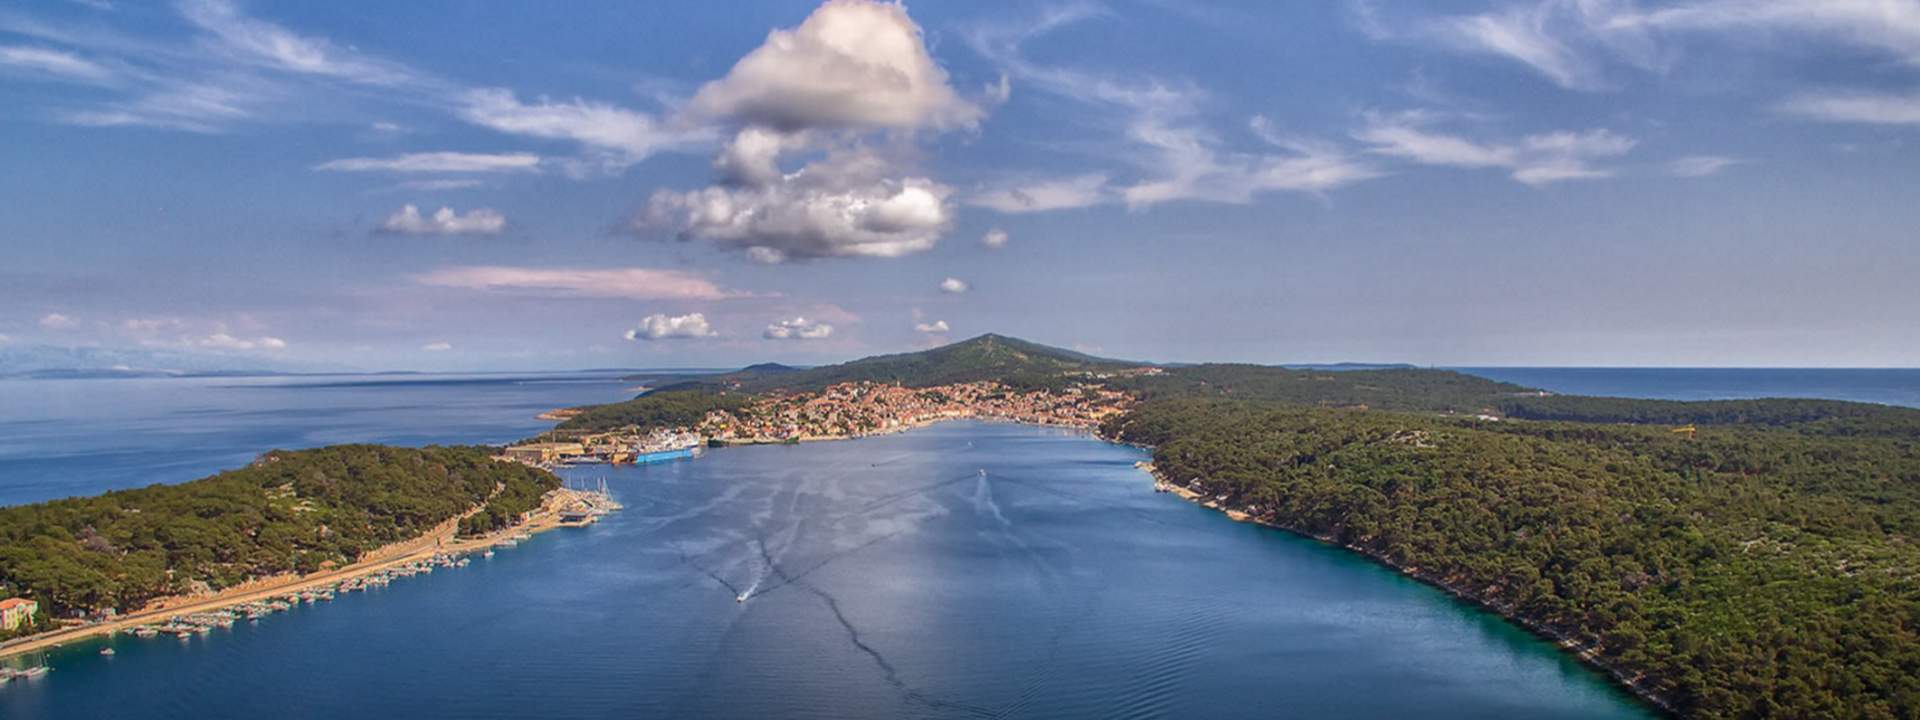 Voguez vers les plus belles îles croates en catamaran